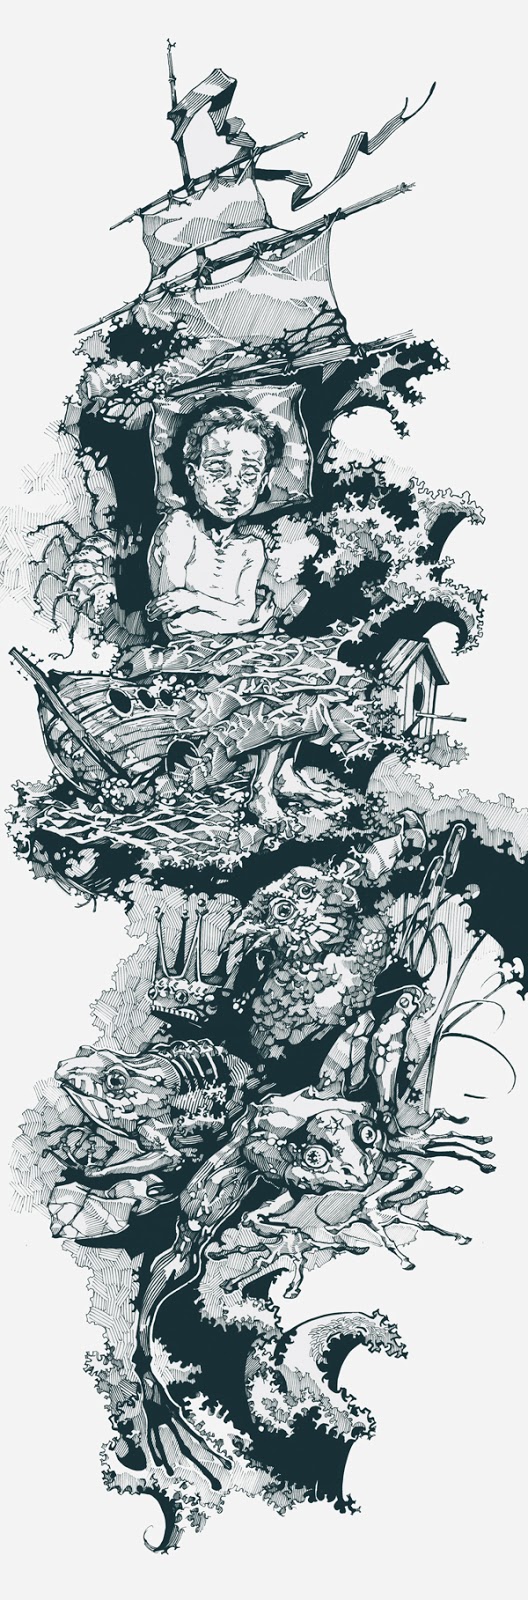 Черно-белые иллюстрации Виктора Миллера Гауса